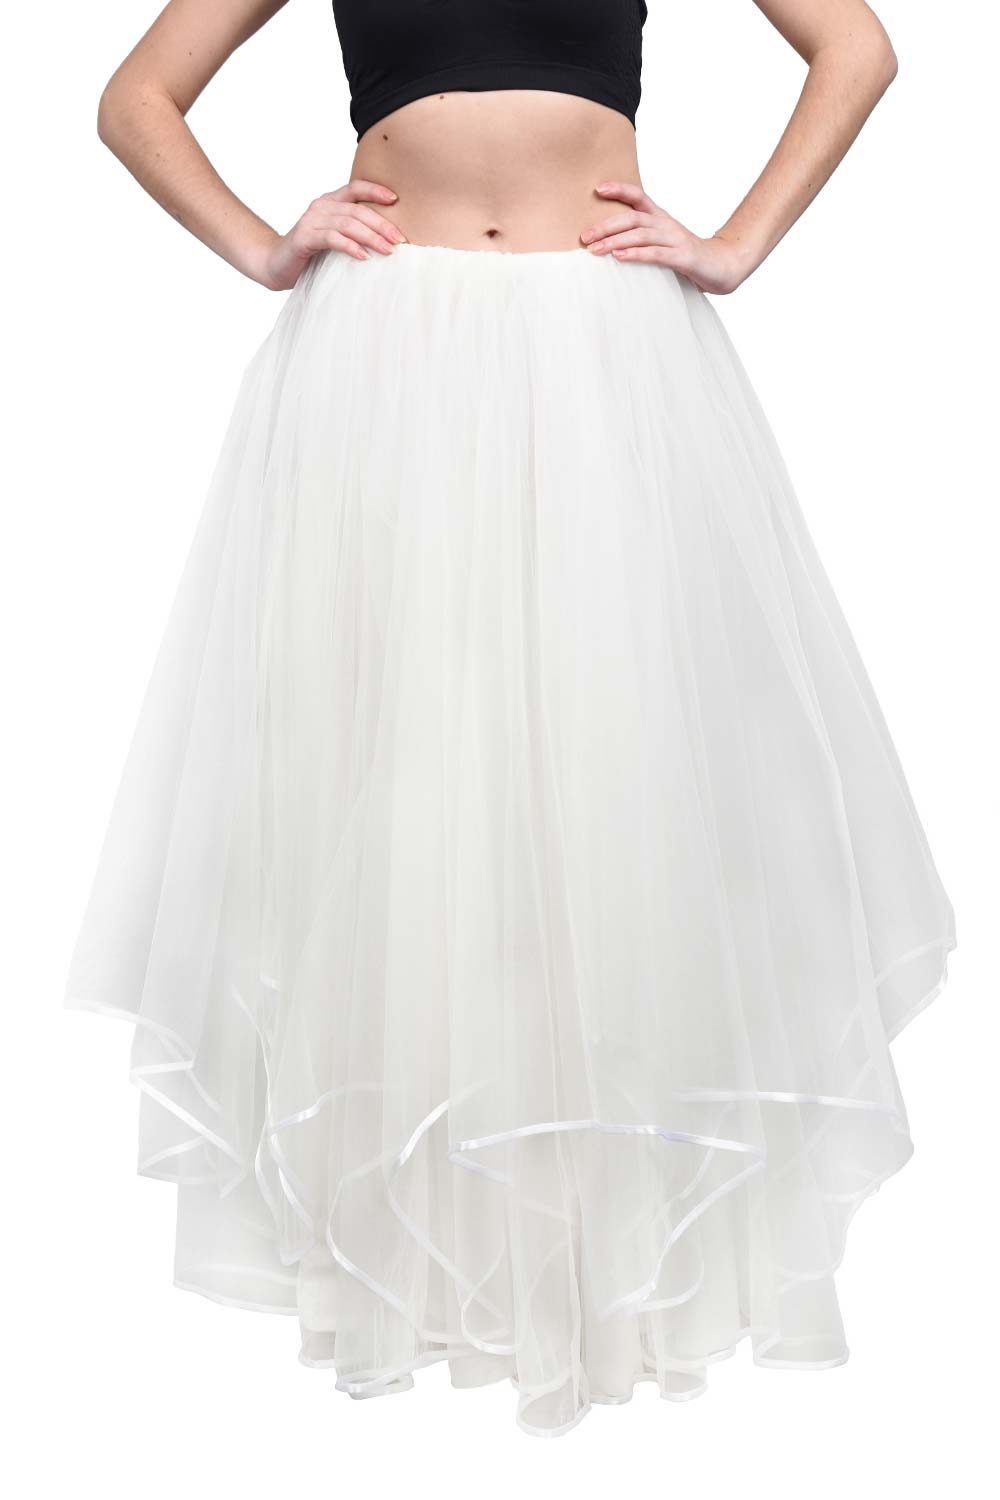 White Long Wedding Tulle Skirt Bohover 7742